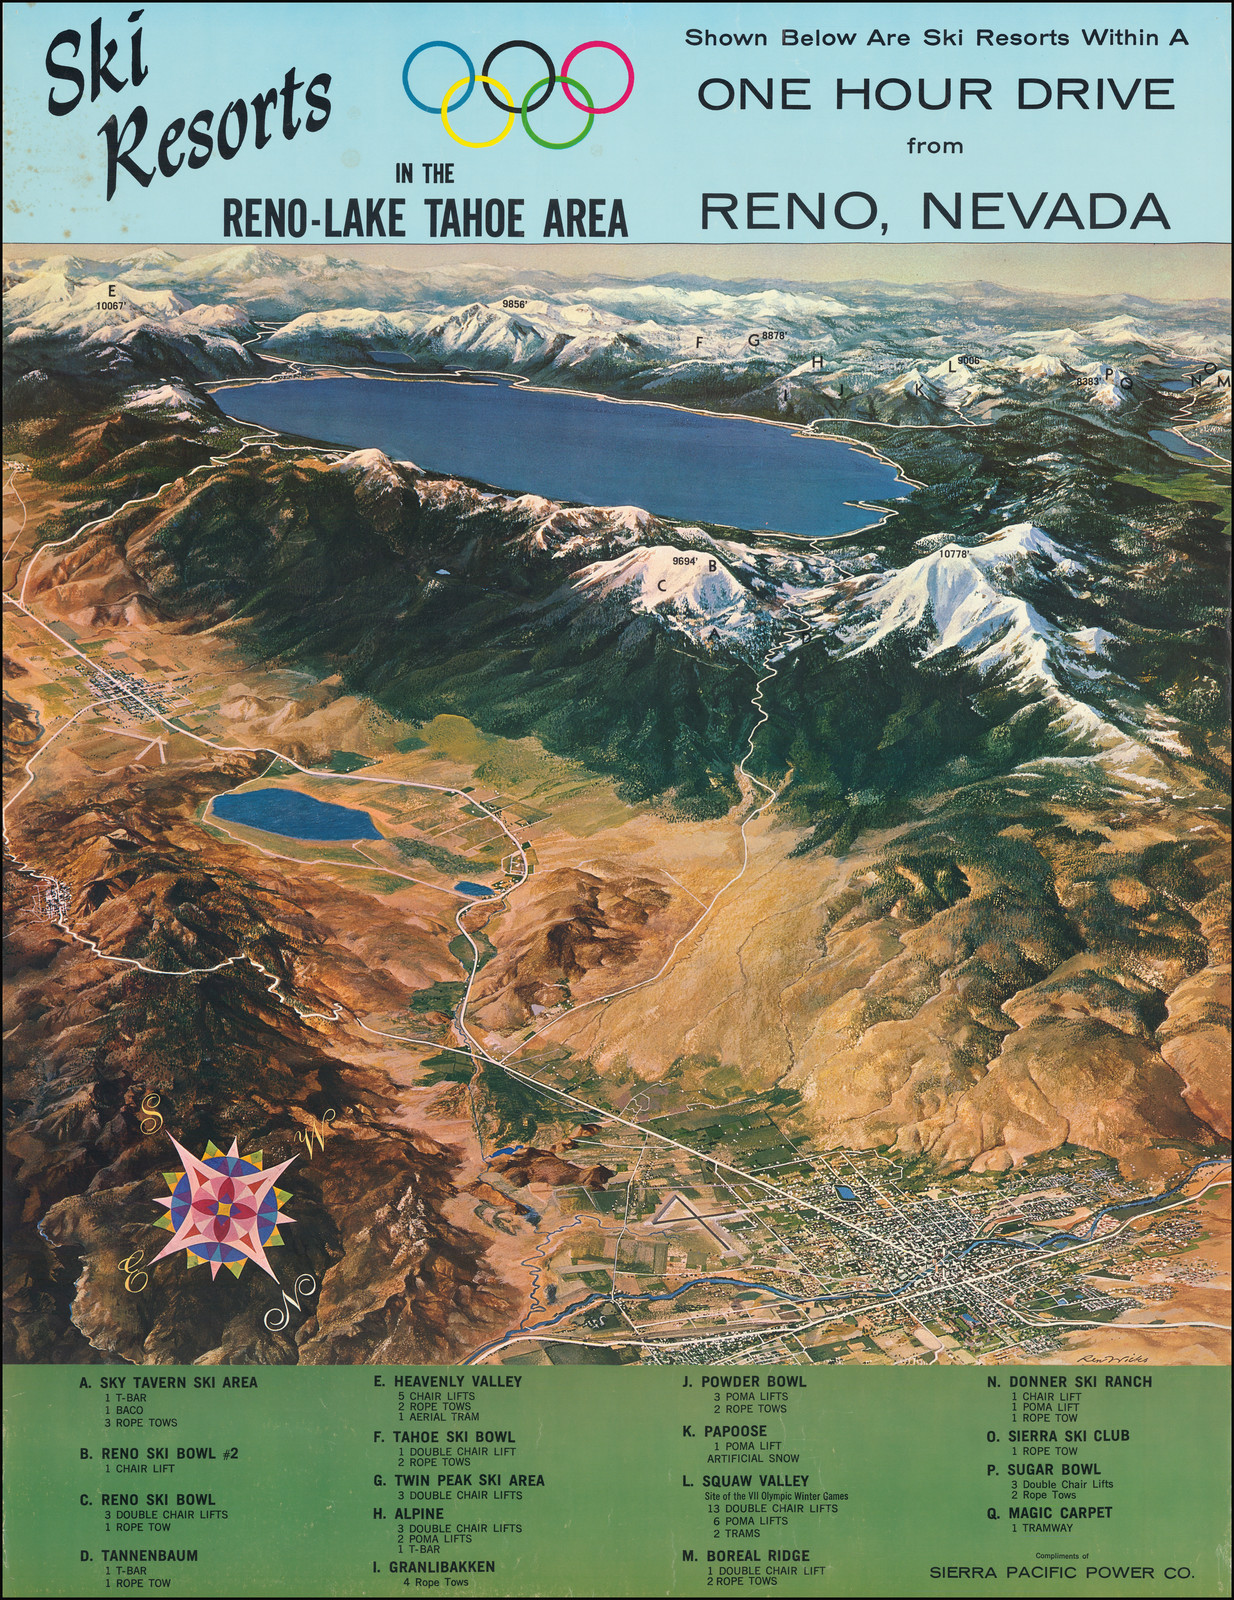 Lake Tahoe Ski Resorts and Reno, Nevada, 1960.